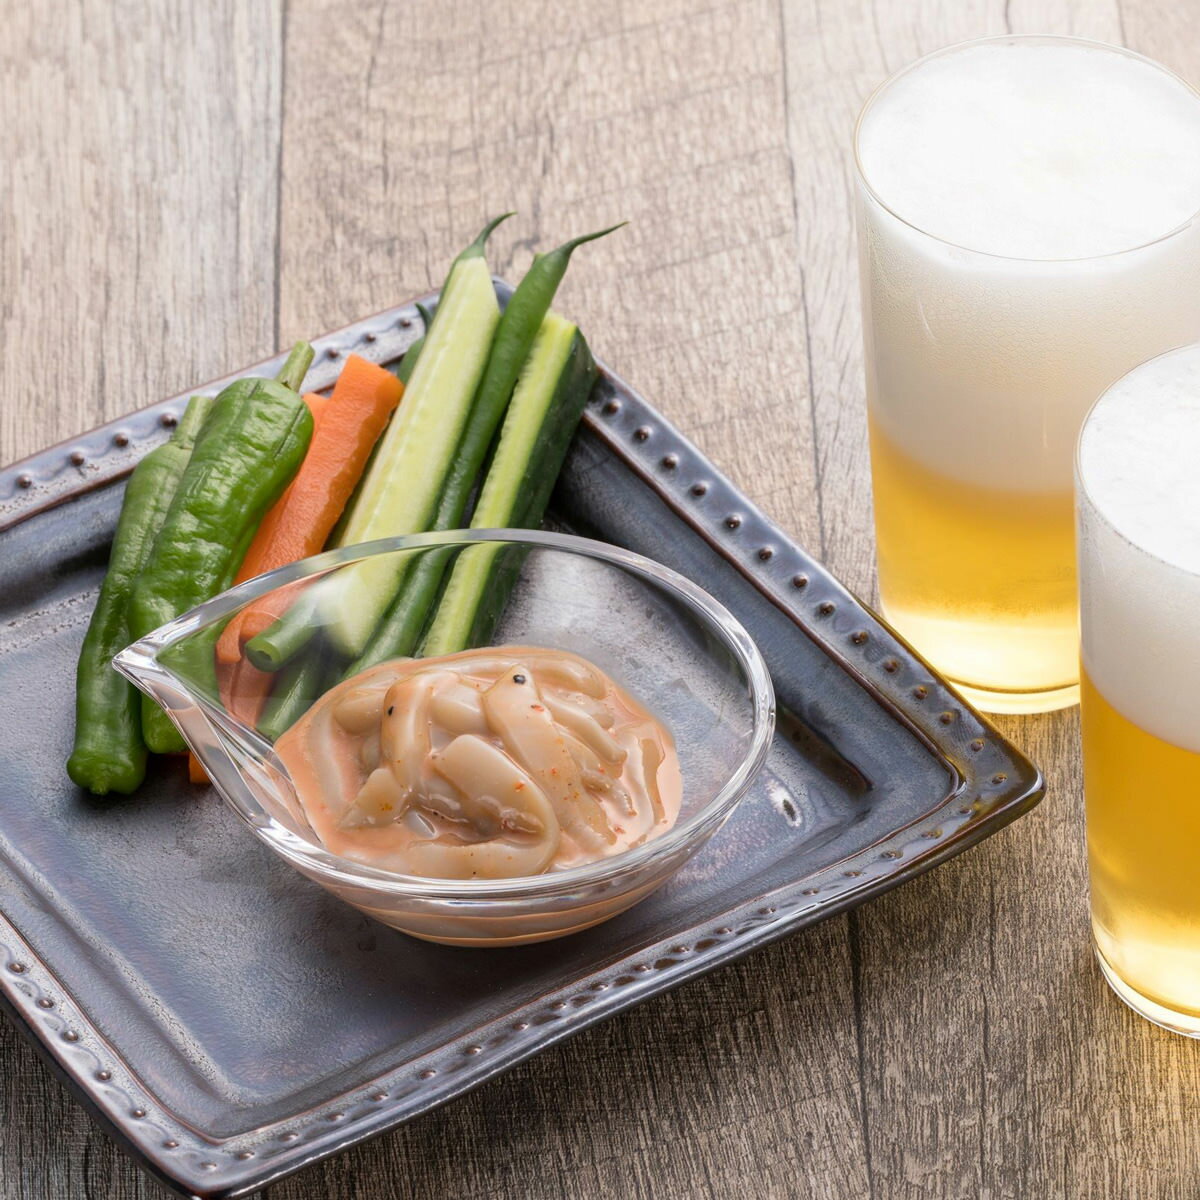 いか刺身専門店がつくった「ビールを楽しむいかの塩辛 減塩 プレミアムいか塩辛 ブラック 3個セット」です。丁寧に皮をむいて正肉のみで仕上げています。ブラック、レッドペッパーなどの辛さがビールによく合います。ステック野菜などのおつまみのトッピングにもおすすめです。減塩にこだわり、日本食品標準成分表2015年版(七訂)記載「塩辛」と比較して65％塩分をカットしました。化学調味料、増粘多糖類、着色料などの添加物を一切使用していない無添加食品です。新鮮素材で鮮度管理されたいかは、肝も生で食べられる鮮度レベルで、生臭みやえぐみが全くなくいかの身と肝のおいしさを感じていただけます。食べきりサイズの小分けパックです。ご飯のお供に、お酒のおつまみにもおすすめです。とろりとした滑らかな口当たりがあらゆる日本酒に良く合います。【名称】いかの塩辛【数量・内容】70g×3【賞味期間】製造日より18か月【原材料】するめいか(国産)、いか肝、食塩、醤油、植物油、香辛料、(一部に小麦・いか・大豆を含む)【仕様】掲載商品には、アレルギーの原因といわれる原材料を含んでいる場合がございます。 くわしくはお問い合わせフォームにてご連絡ください。類似商品はこちら減塩 プレミアムいか塩辛 ホワイト 3個セット3,520円減塩 プレミアムいか塩辛 グリーン 3個セット3,520円減塩 プレミアムいか塩辛 食べくらべセット 33,520円減塩 プレミアムいか塩辛 レッド 3個セット 3,520円減塩 プレミアムいか塩辛 ブラック イカ 冷凍2,775円減塩 プレミアムいか塩辛 ブラック 2個 イカ4,395円減塩 プレミアムいか塩辛 ホワイト イカ 冷凍2,775円減塩 プレミアムいか塩辛 レッド イカ 冷凍 2,775円減塩 プレミアムいか塩辛 グリーン イカ 冷凍2,775円新着商品はこちら2024/5/10岡山のり 早摘み 詰合せ 2種セット 味付のり3,900円2024/5/10岡山のり 烏城ブラック 焼きのり 詰合せ 5個3,500円2024/5/10岡山若のり 味付のり 3種セット 味付けのり 1,500円再販商品はこちら2024/5/10南州農場黒豚ちまき 12個 詰合せ ちまき 惣5,205円2024/5/10南州農場黒豚ちまき 21個 詰合せ ちまき 惣8,532円2024/5/10パルフェ グランデ 3種セット パフェ ケーキ3,960円